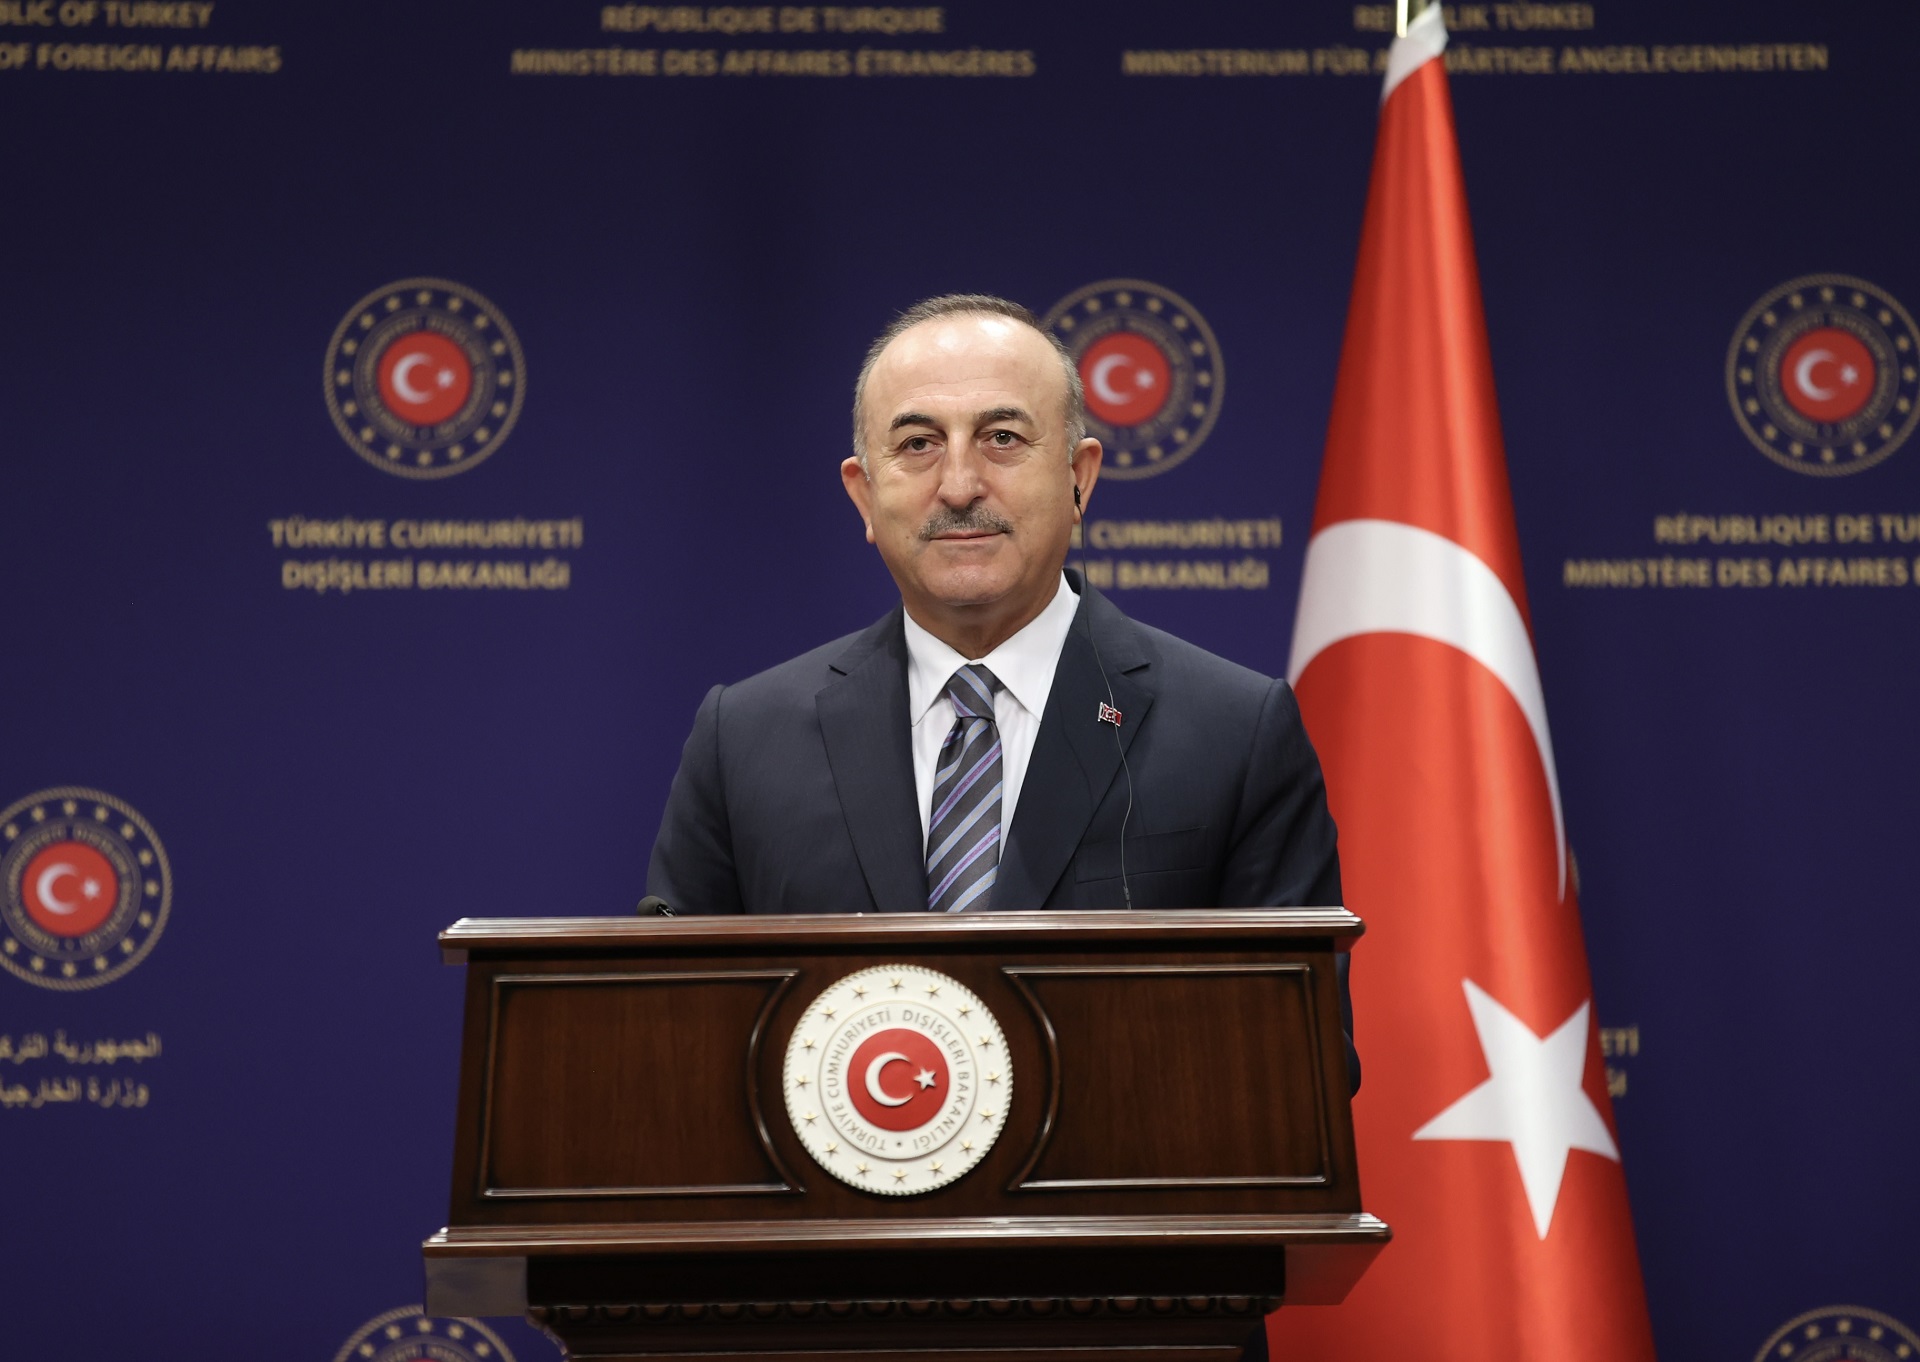 Թուրքիան հաստատակամ է շարունակել համագործակցությունը Ռուսաստանի հետ